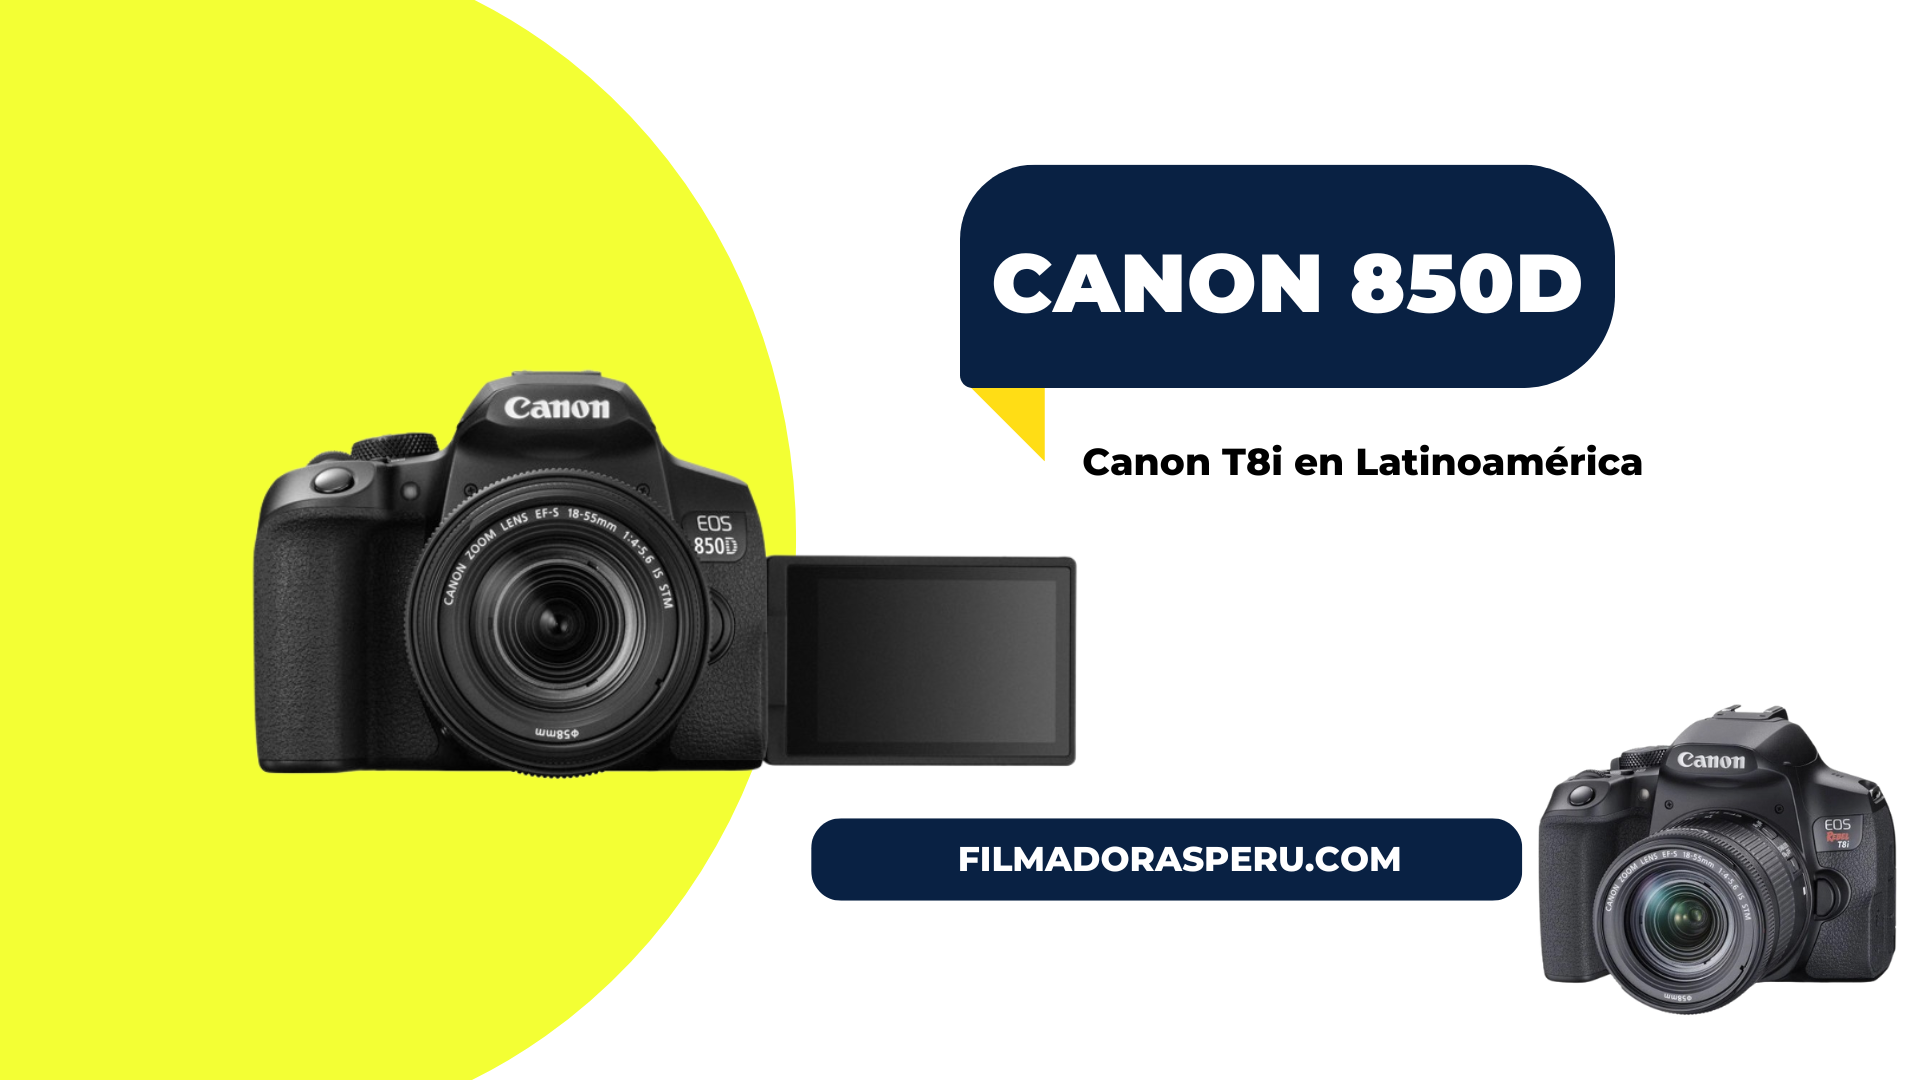 Canon 850d (Canon T8i en Latinoamérica)